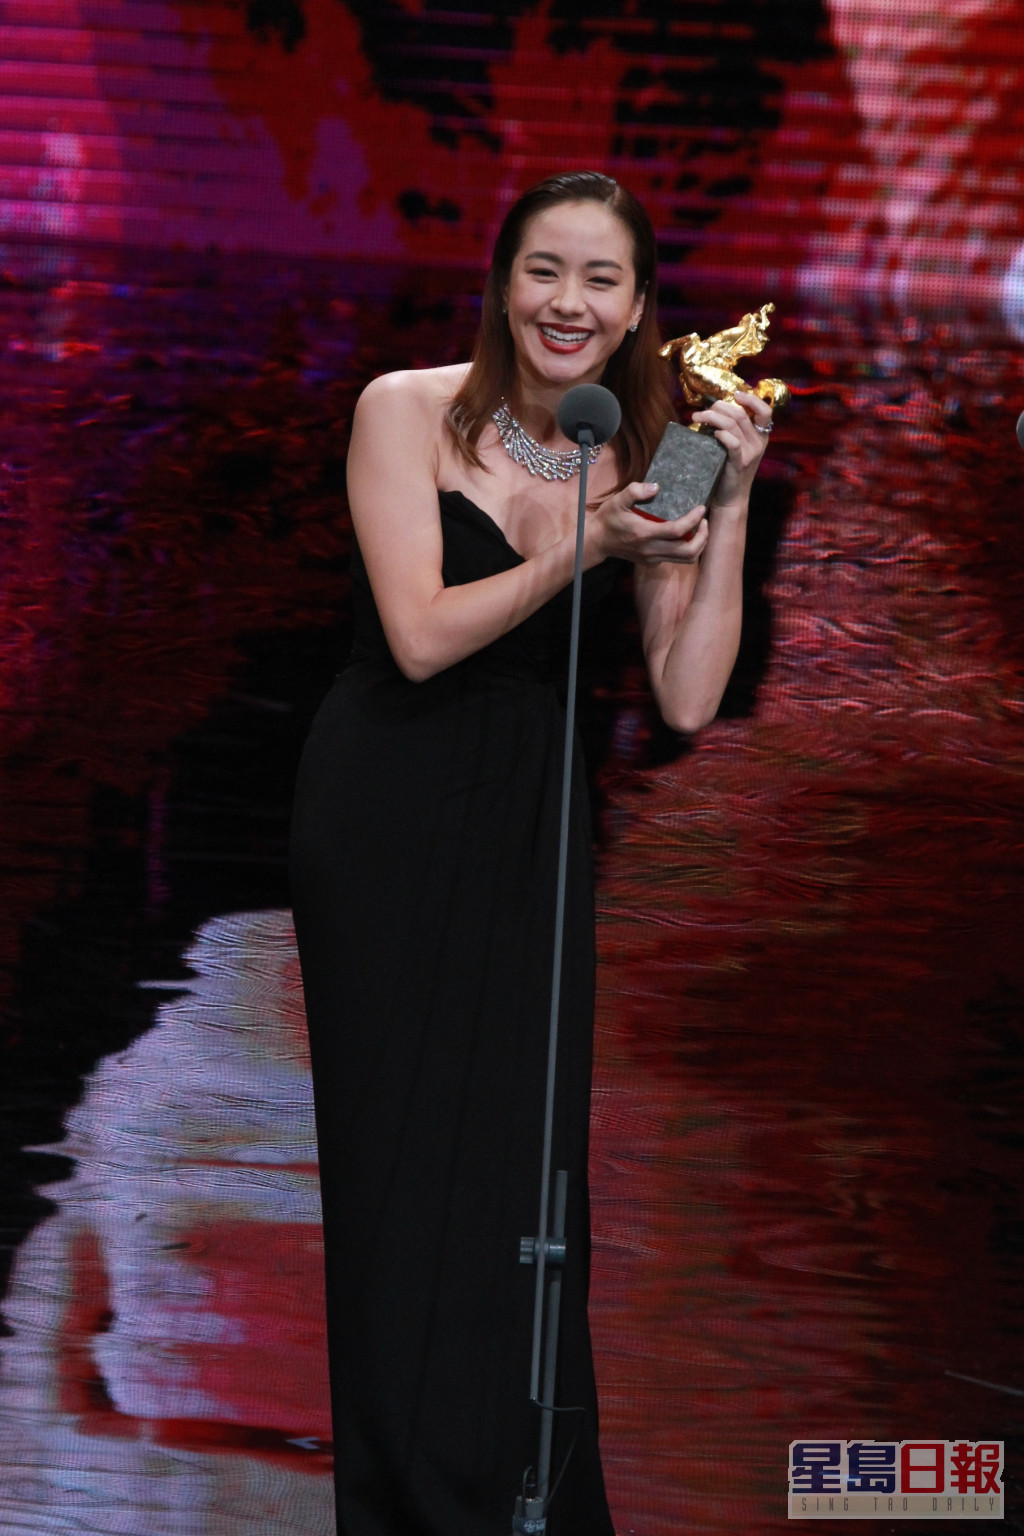 林嘉欣是台灣金馬獎史上首位獲得最佳女主角、最佳女配角與最佳新演員獎三項演技獎的大滿貫演員。